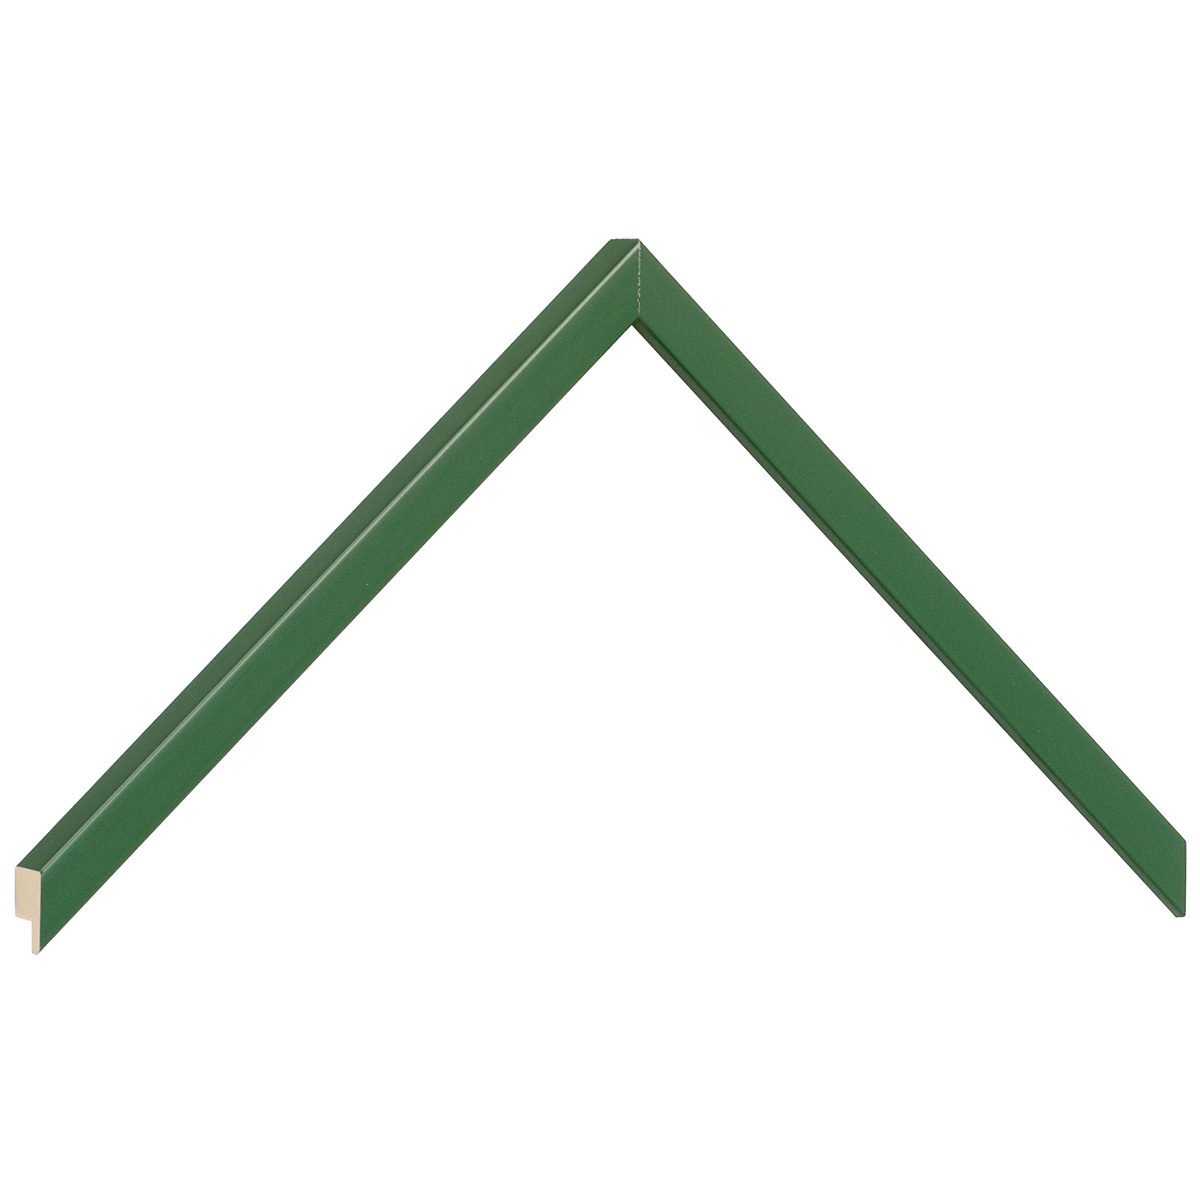 Profil ramin plat 10 mm - finisaj mat - culoare verde măslin - Mostră